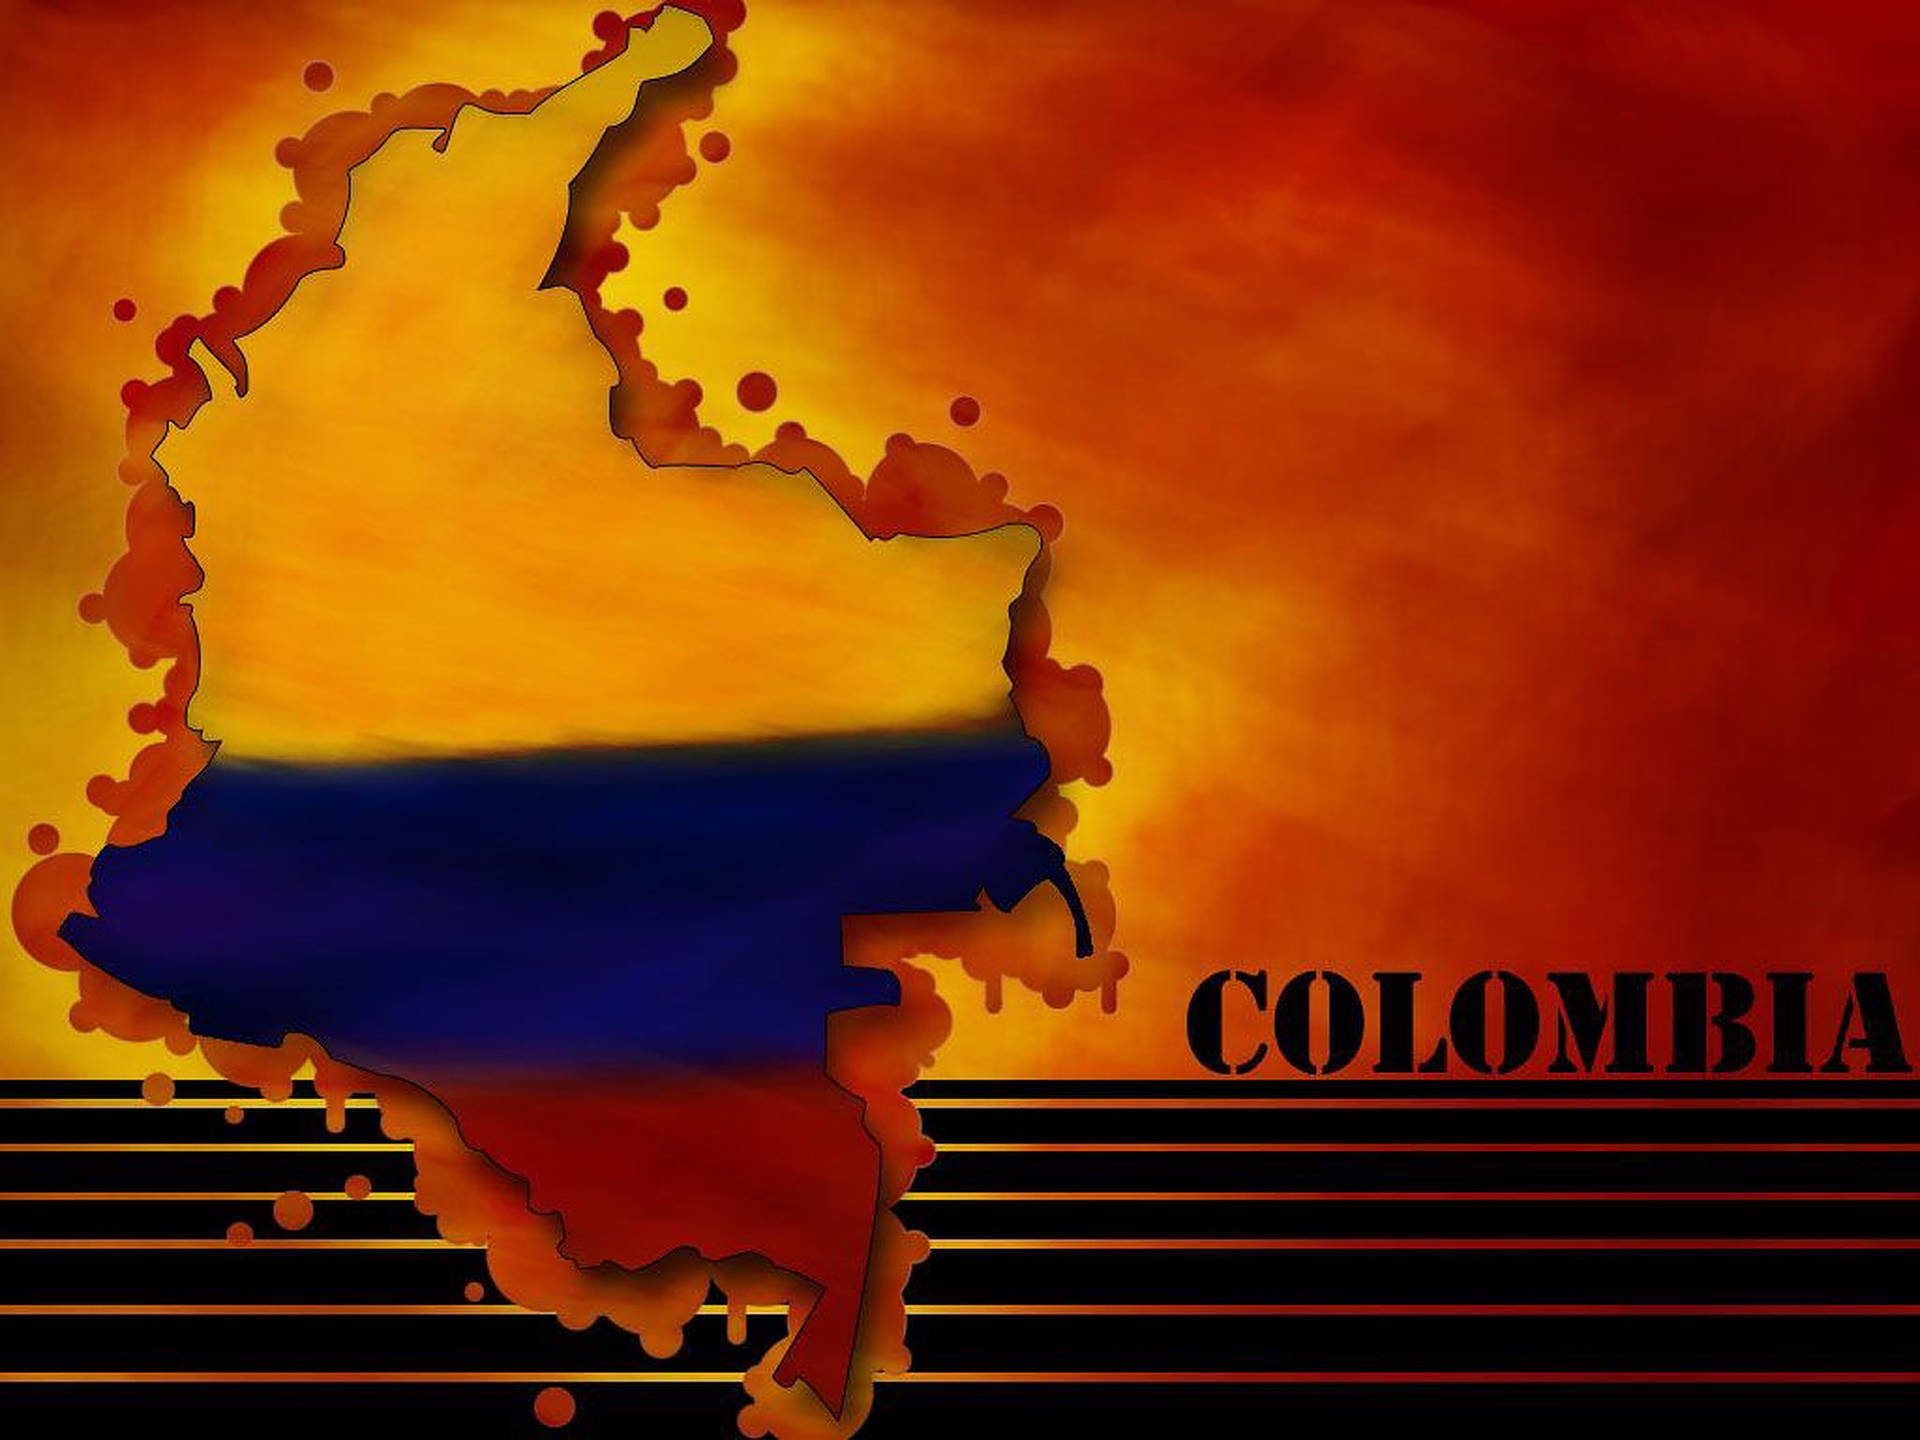 Kartaöver Colombia. Wallpaper